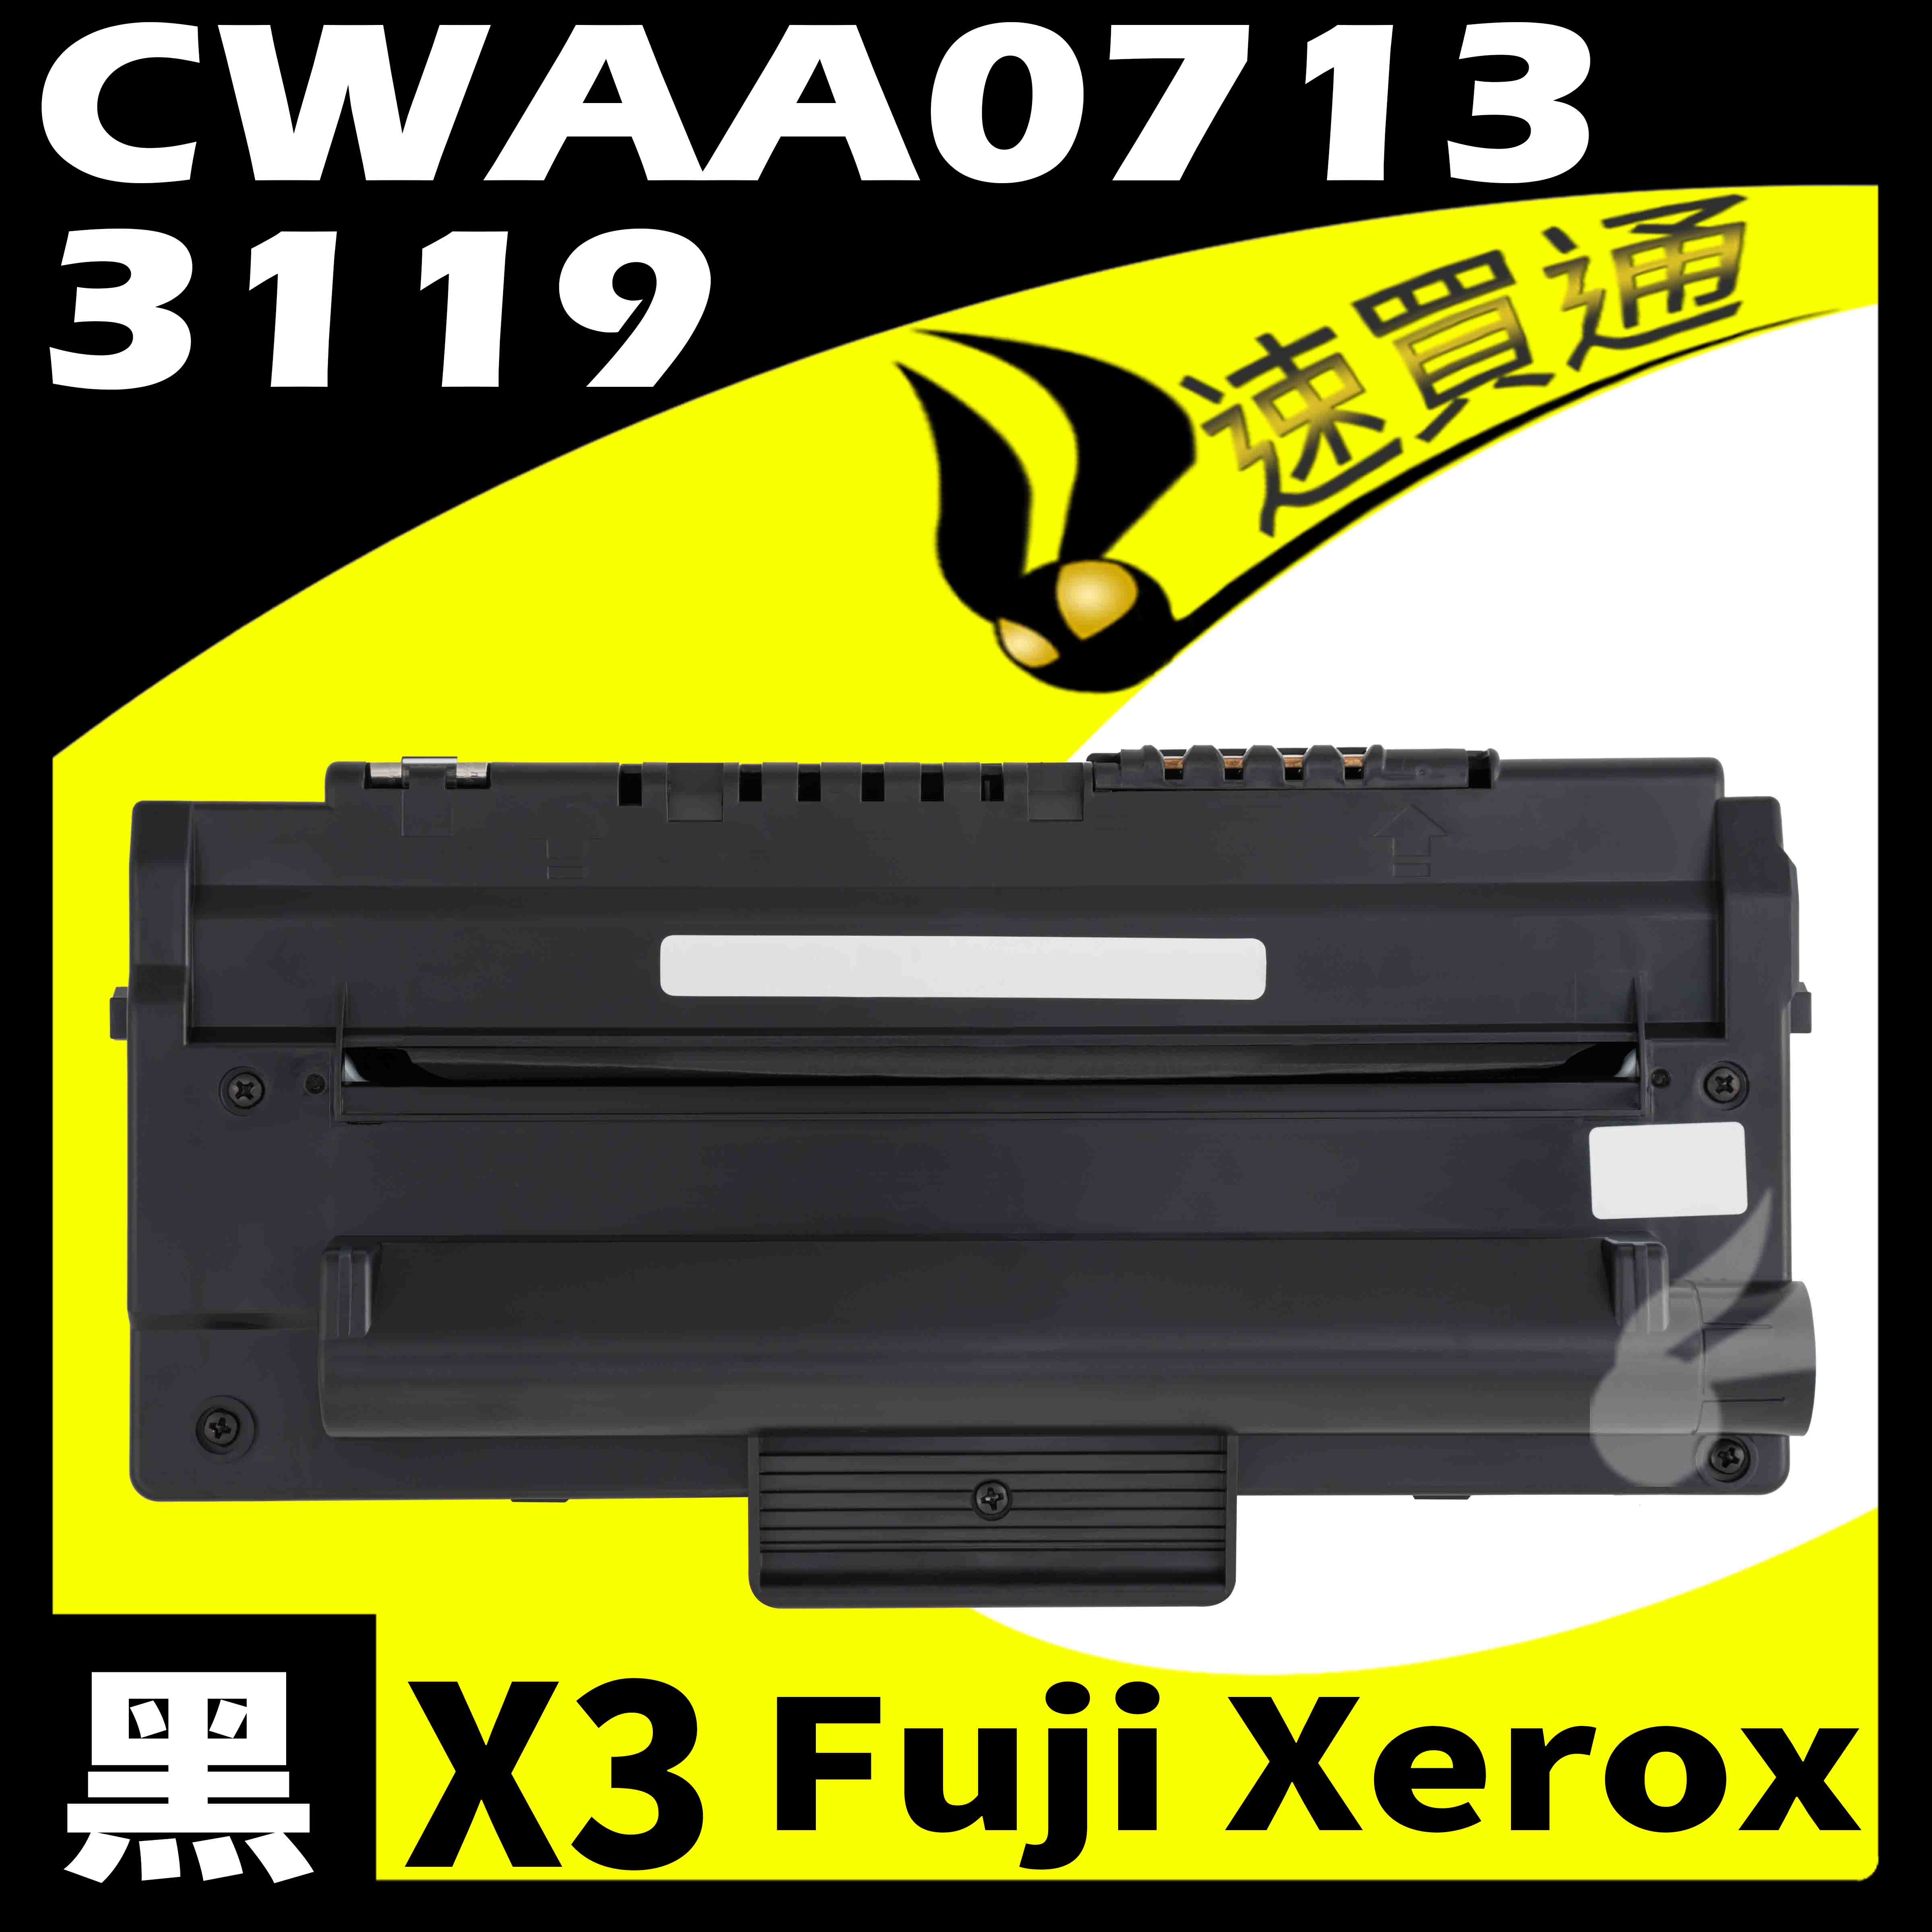 【速買通】超值3件組 Fuji Xerox 3119/CWAA0713 相容碳粉匣